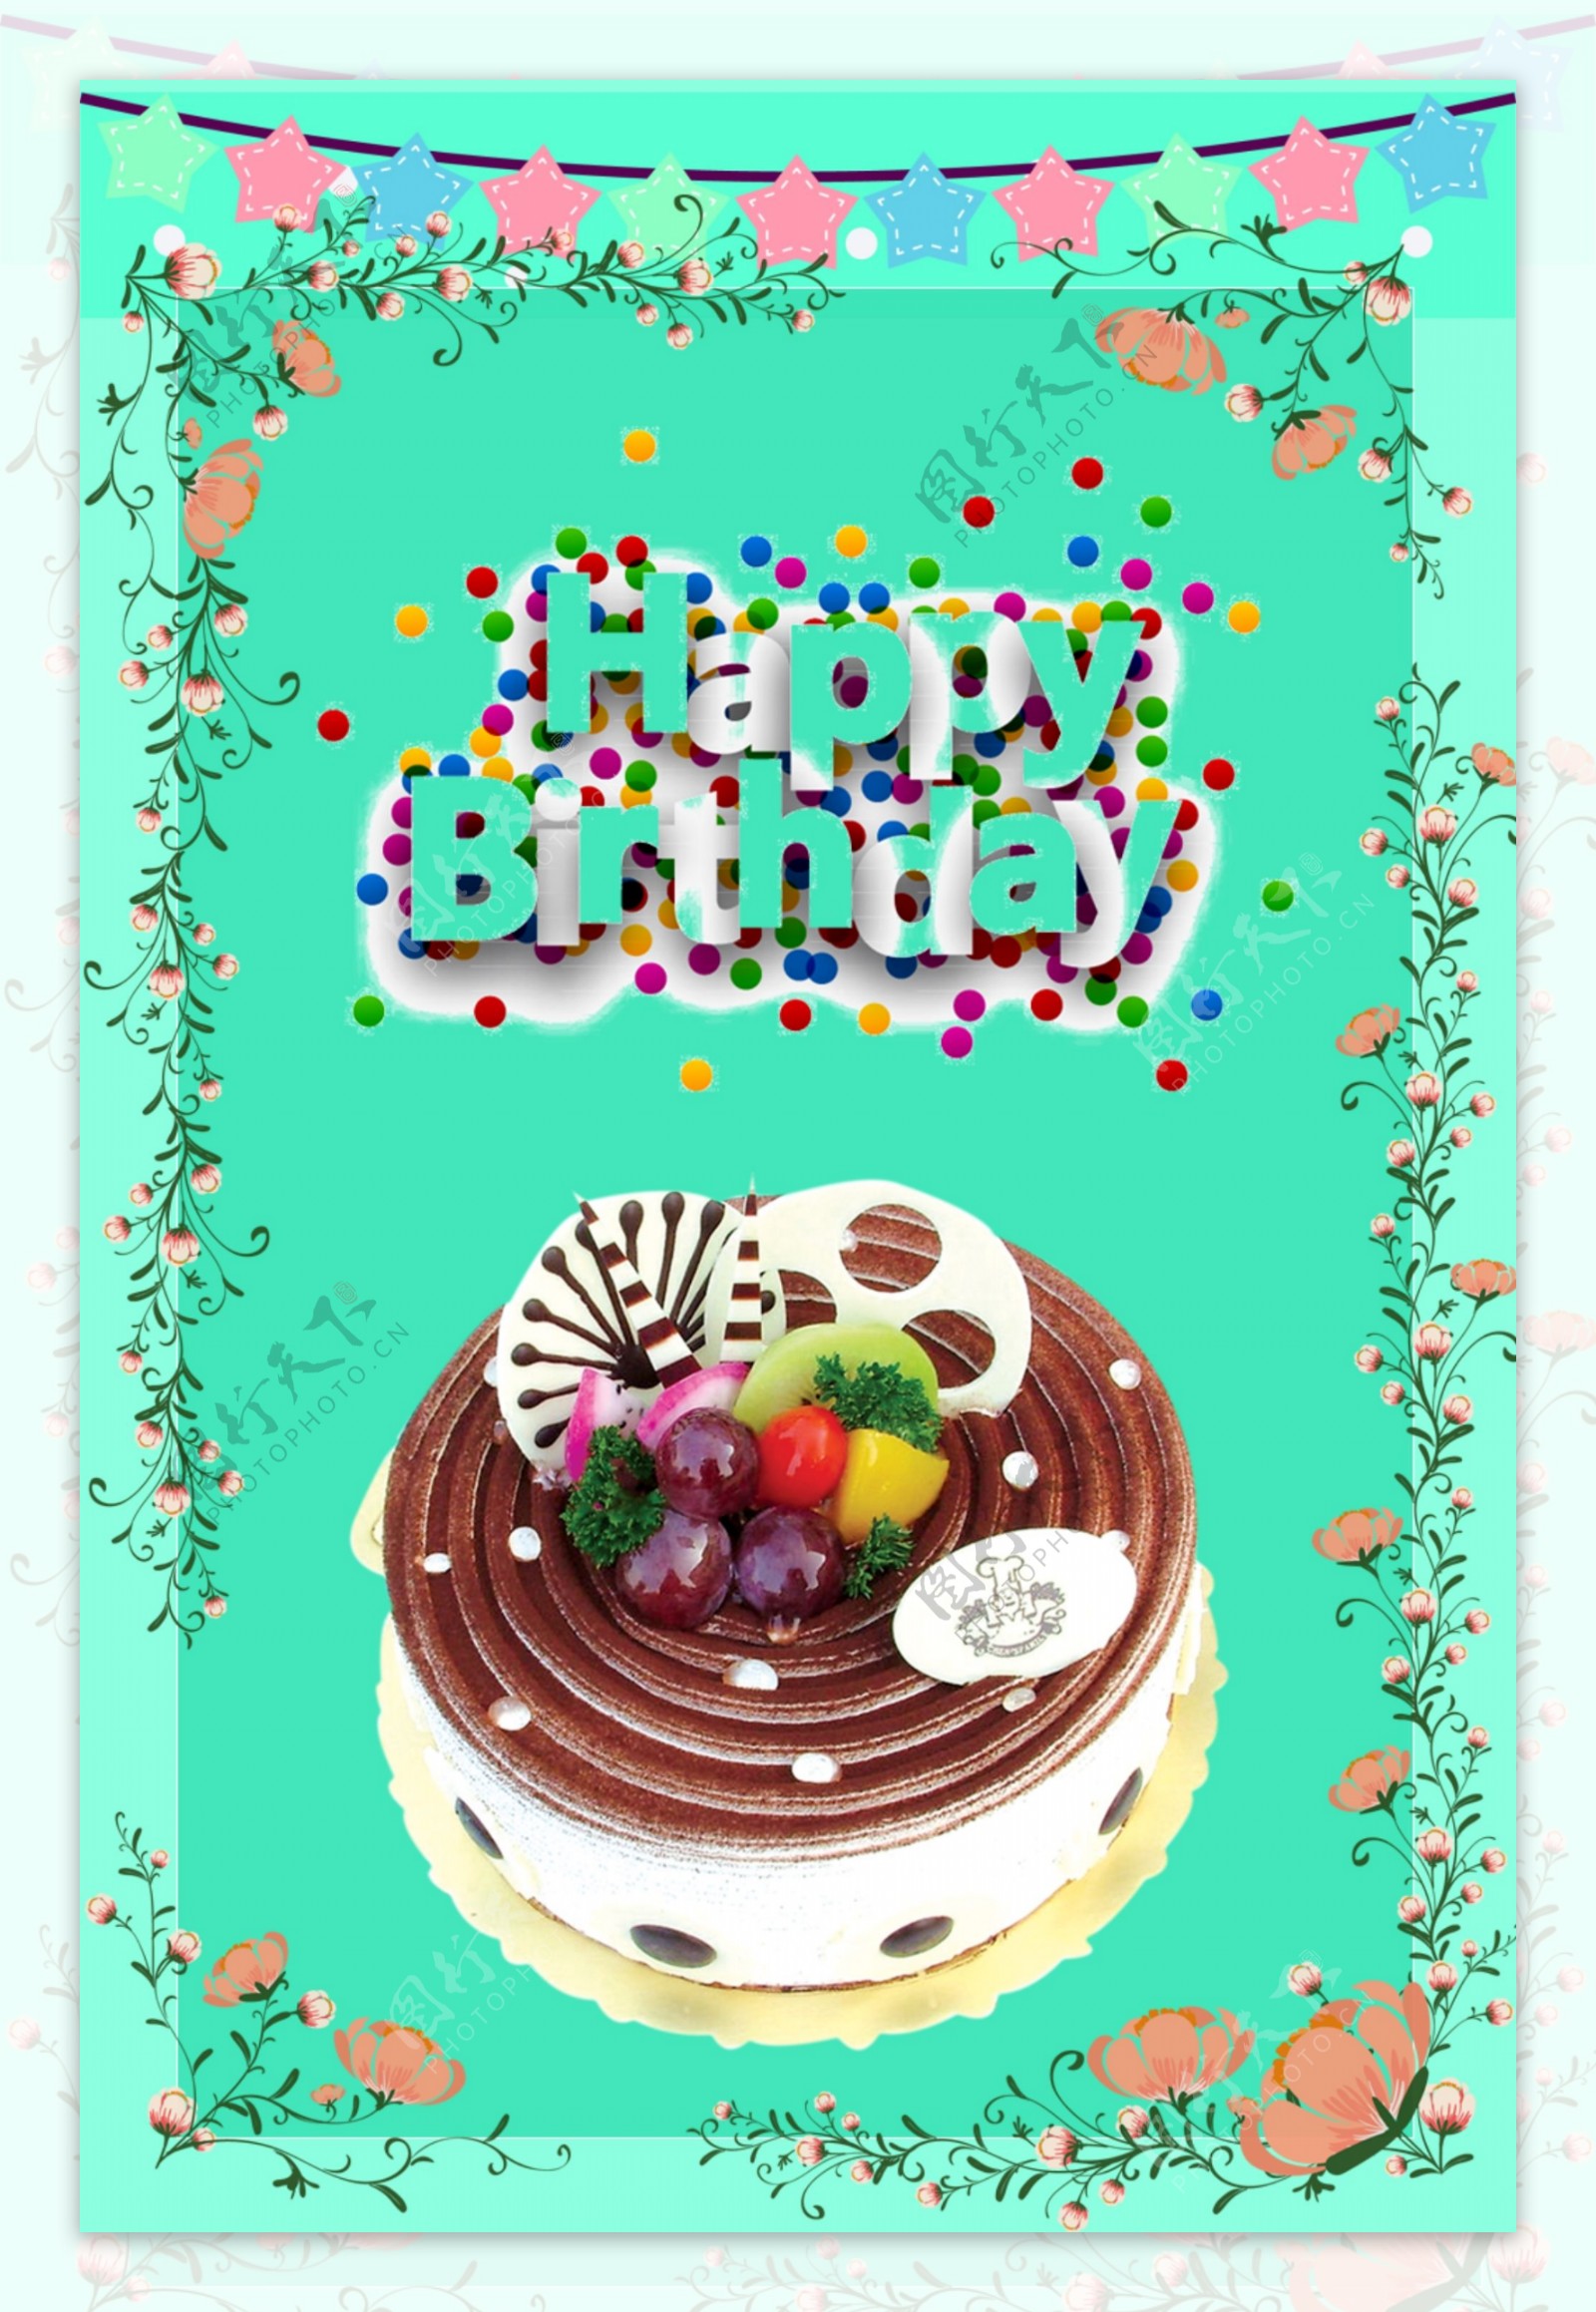 生日巧克力蛋糕蓝色藤花背景宣传海报